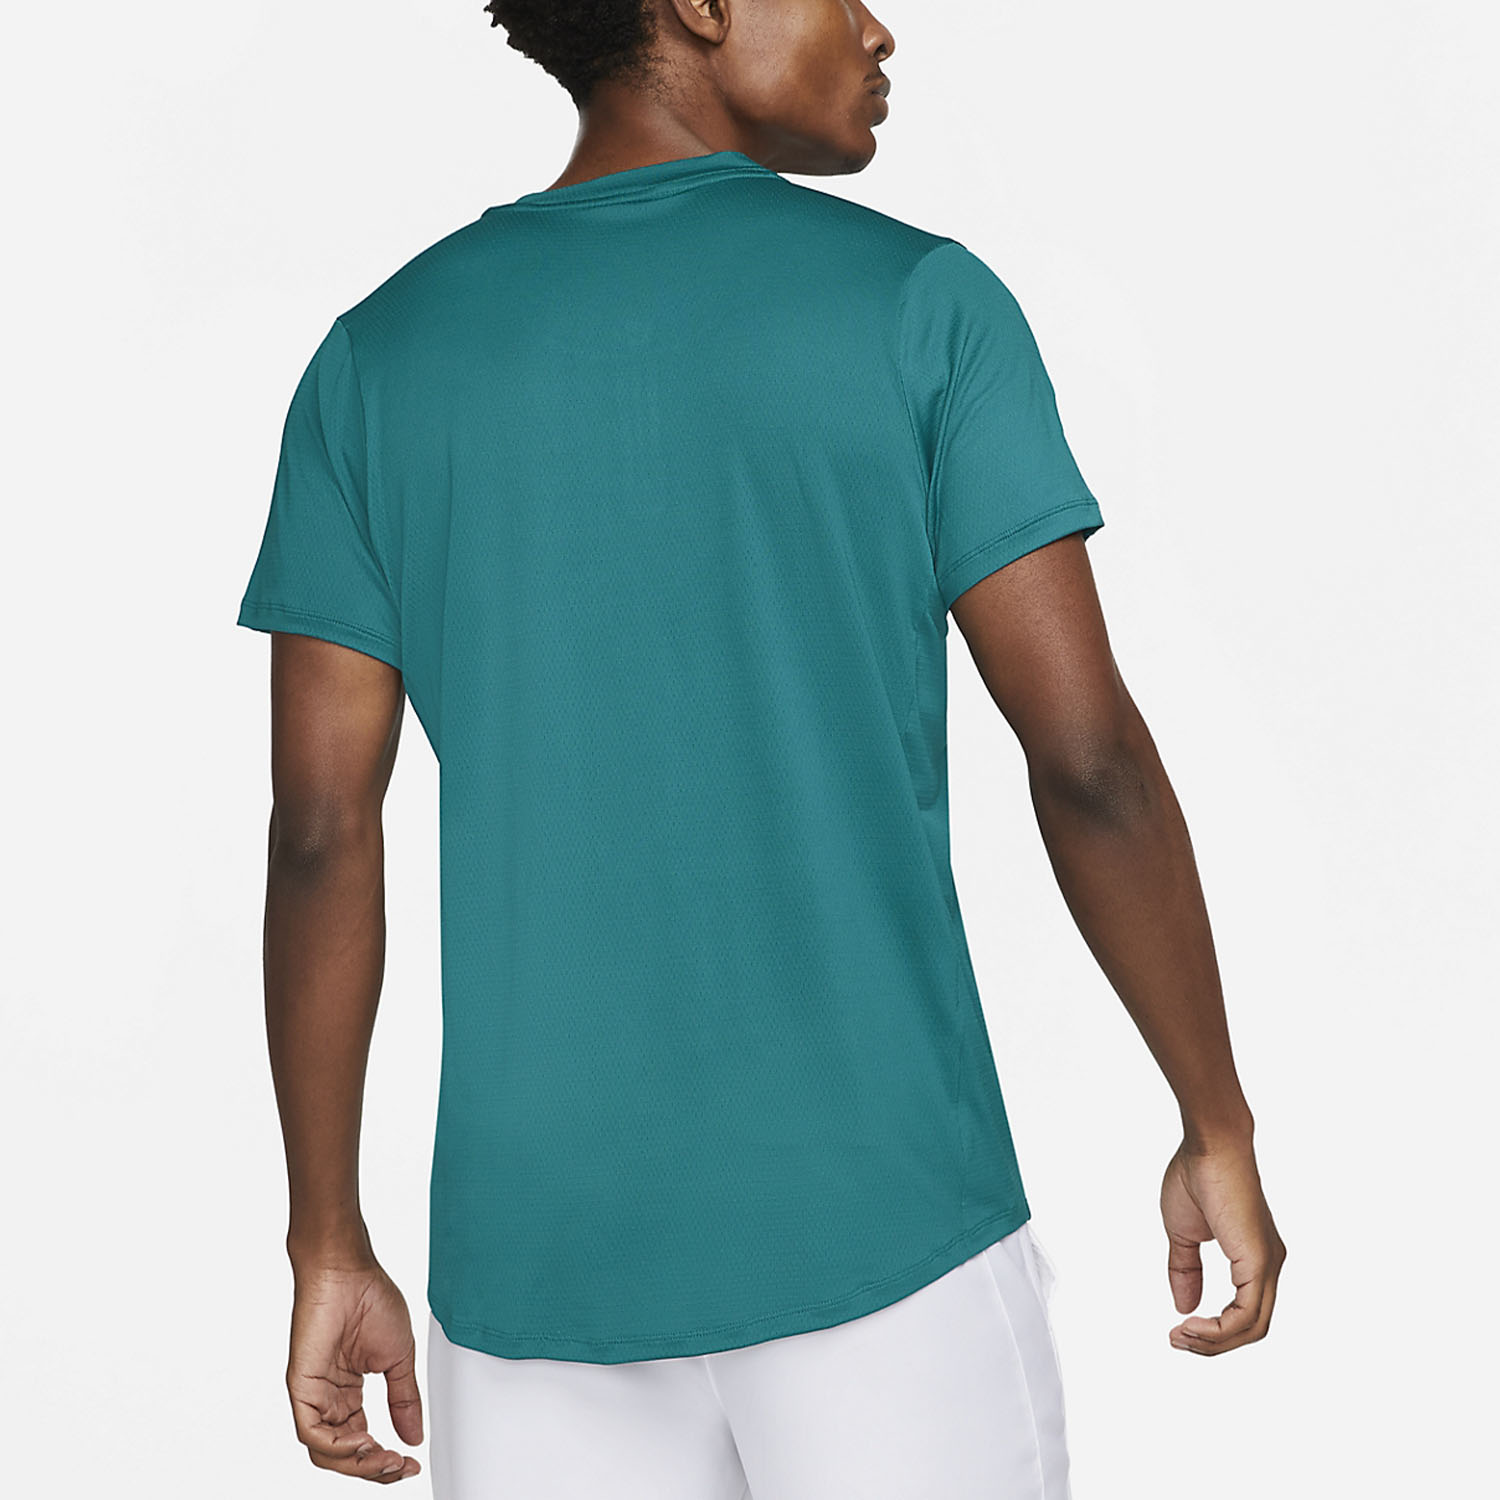 Nike Dri-FIT Advantage Men's Tennis Polo - Bright Spruce/White